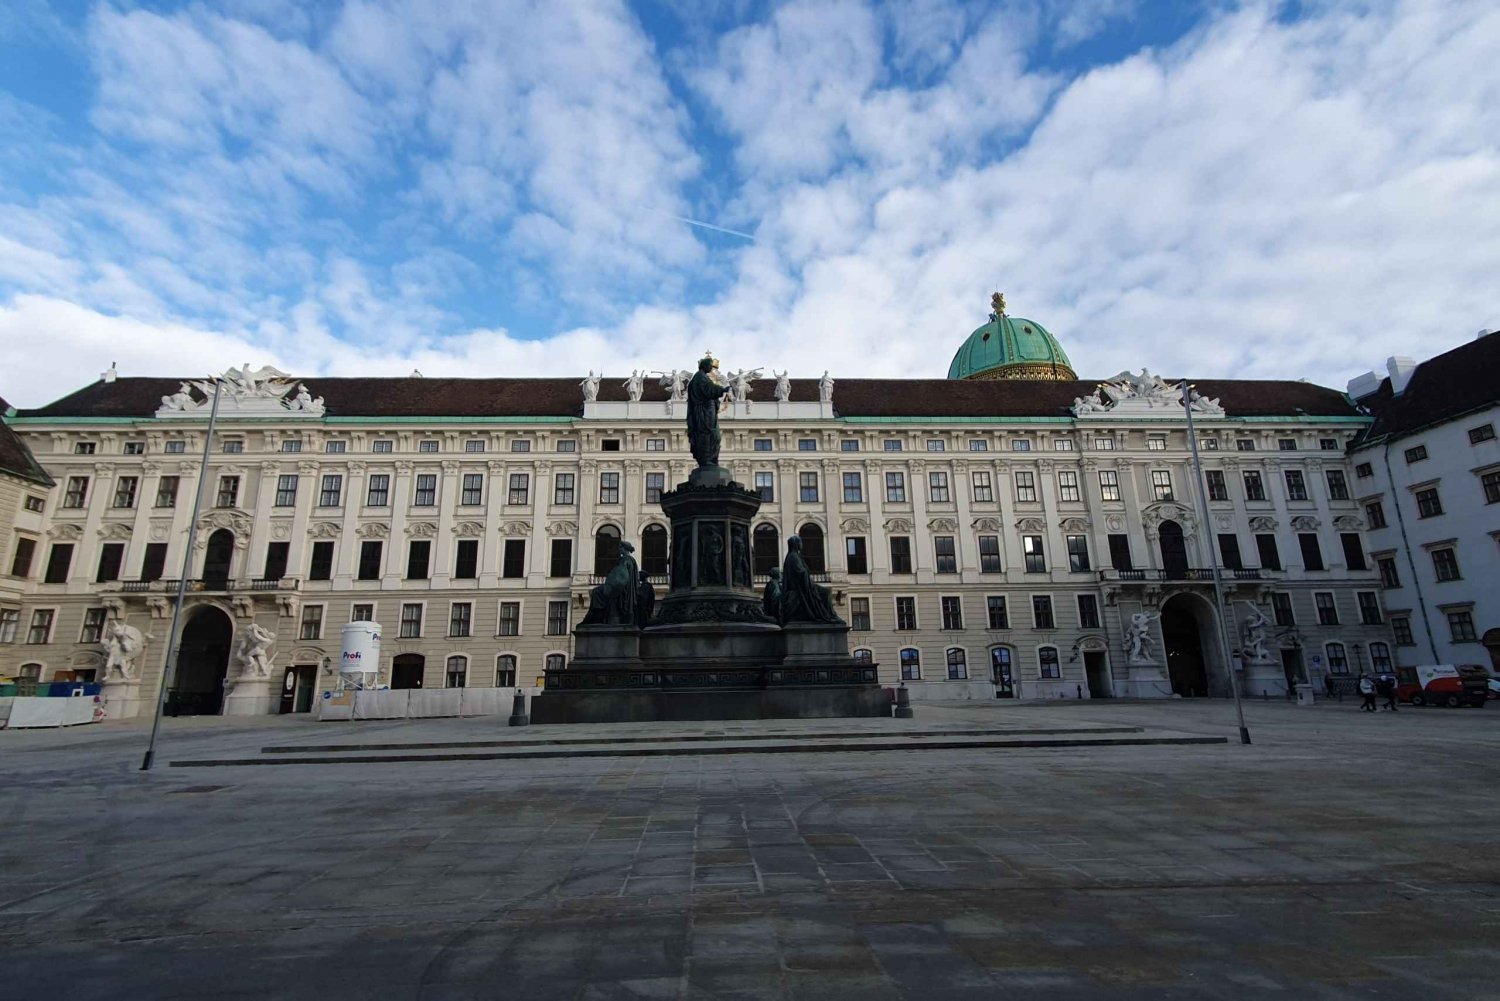 Caça ao tesouro no Palácio de Hofburg, em Viena